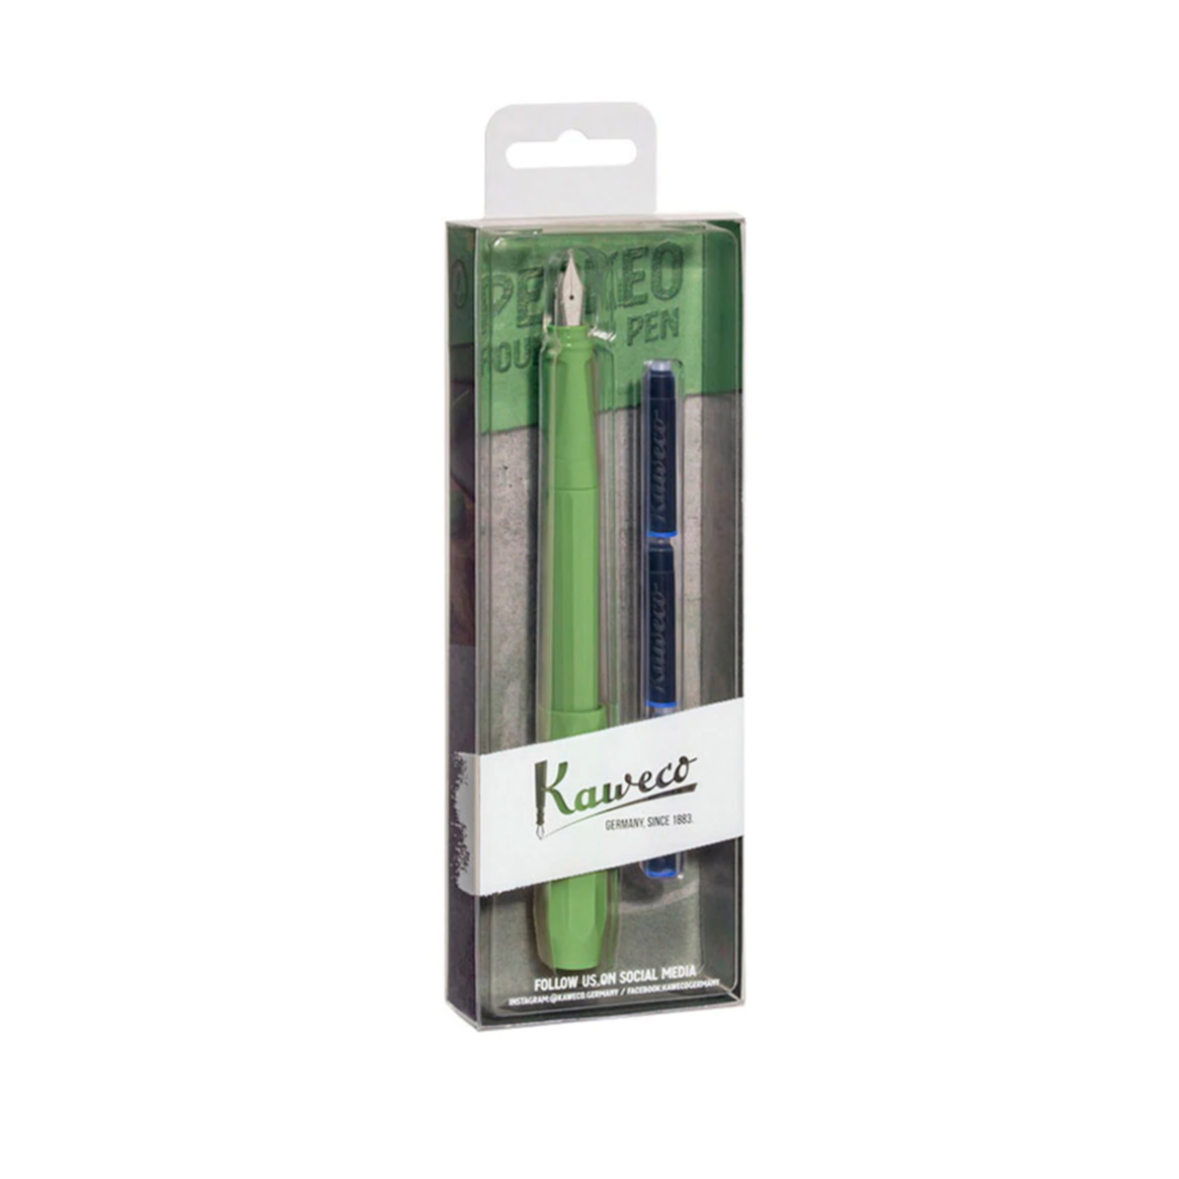 Perkeo Fountain Pen Pack - Jungle Green (Medium)